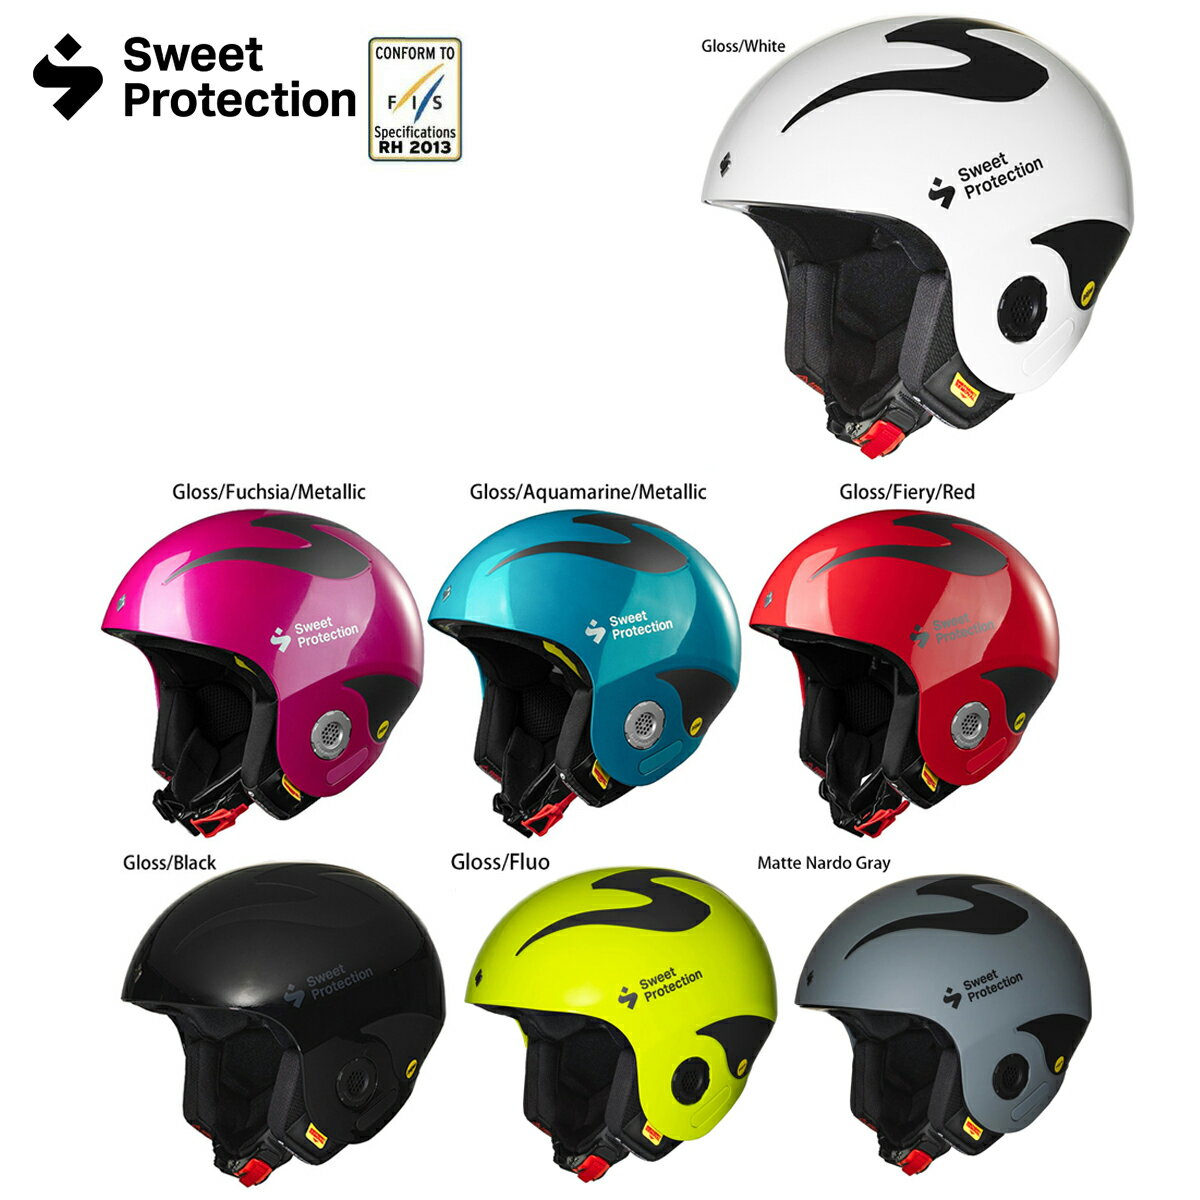 Sweet Protection スウィートプロテクション スキーヘルメット■Volata MIPS　ヴォラータ ミップス現代のSweet Protectionを代表する定番レースモデルダウンヒルやスーパー大回転などのFIS規格認定が必要となる高速系アルペンレースで使用可能なレース向けモデル。2018年にスウィートが発表した全く新しいチンガードシステムを導入したヘルメットです。スラロームチンガードがビスなしで装着可能となっているので、レースや練習へ今までよりも更に集中して臨むことができます。ビスパーツをなくすなどのリスクもなくなりました。・FIS公認レース用ヘルメット・ABSレース用熱可塑性樹脂シェル・インパクトシールド：キーエリアでの内側からの衝撃を広い範囲に分散させるプレミアム衝撃吸収テクノロジー・ゲートシールド： EPPフォームとポリカーボネートを一体成形したゲートの衝突保護機能・レース専用マイクロアジャストメントラチェットバックル・簡単に取り外して洗うことが可能なスナップインライニング・ゴーグル用通気口を備えた内部ゴーグルガレージ・複雑な形状のジオメトリー構造の高密度衝撃吸収ライナー・すべてのゴーグルに最適なフィット感を提供するアダプトゴーグルフィット・緊急時にワンタッチで取り外し可能なイヤーパッド・優れた聴力を発揮する2ピースのイヤーポート・スラローム競技用の工具不要のクイックフィット・チンガード・脳損傷を軽減するために開発された3レイヤー MIPS システムを搭載Size： S/M (53-56), M/L (56-59), L/XL (59-61)Weight： 700 g (M/L)Certifications：CE EN 1077, CLASS A / ASTM 2040 / FIS RH 2013SIZE:LXL/ML/SMCOLOR:Gloss Aquamarine Metallic/Gloss Black/Gloss Fiery Red/Gloss Fuchsia Metallic/Gloss White